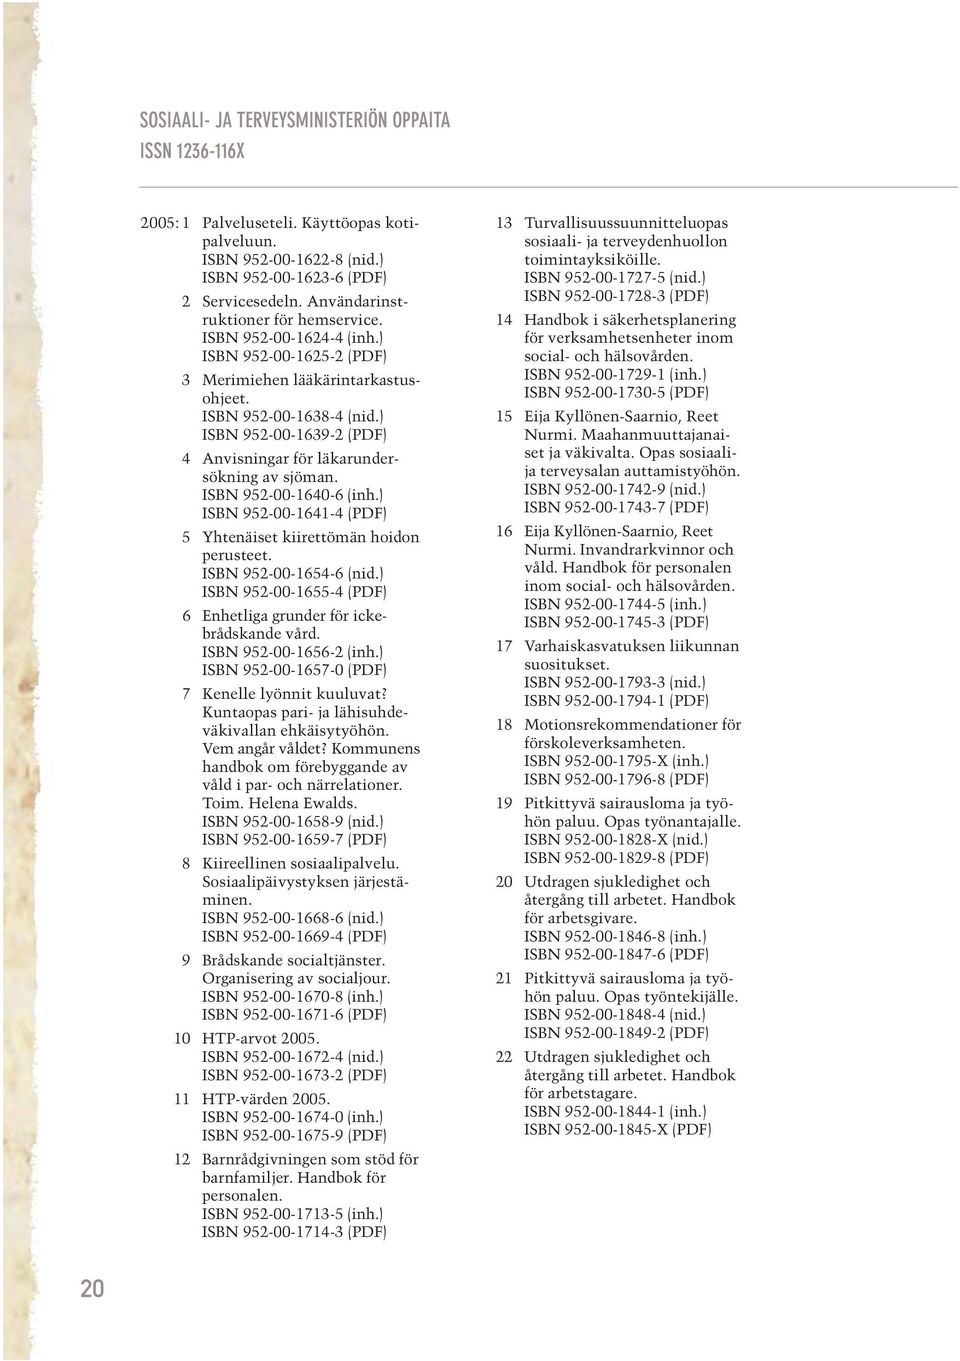 ) ISBN 952-00-1639-2 (PDF) 4 Anvisningar för läkarundersökning av sjöman. ISBN 952-00-1640-6 (inh.) ISBN 952-00-1641-4 (PDF) 5 Yhtenäiset kiirettömän hoidon perusteet. ISBN 952-00-1654-6 (nid.